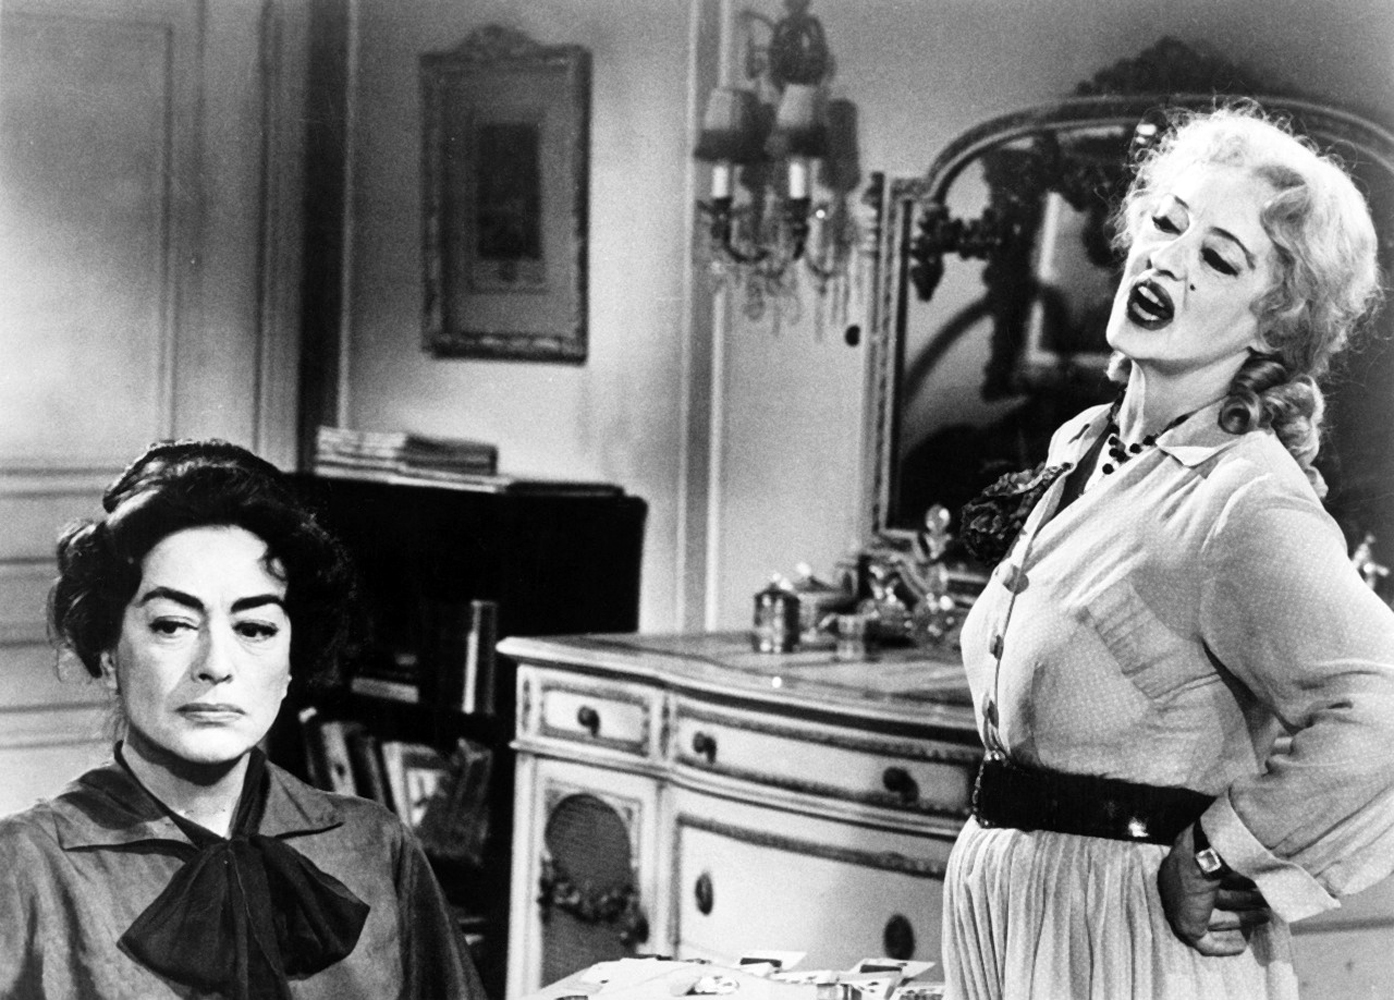 Film çekimleri sırasında Joan Crawford’un tekerlekli sandalyede, kız kardeşinin tutsağı zavallı bir karakteri canlandırırken bile hala güzel görünmek derdinde olmasının Bette Davis’i çıldırttığı rivayet ediliyor. 